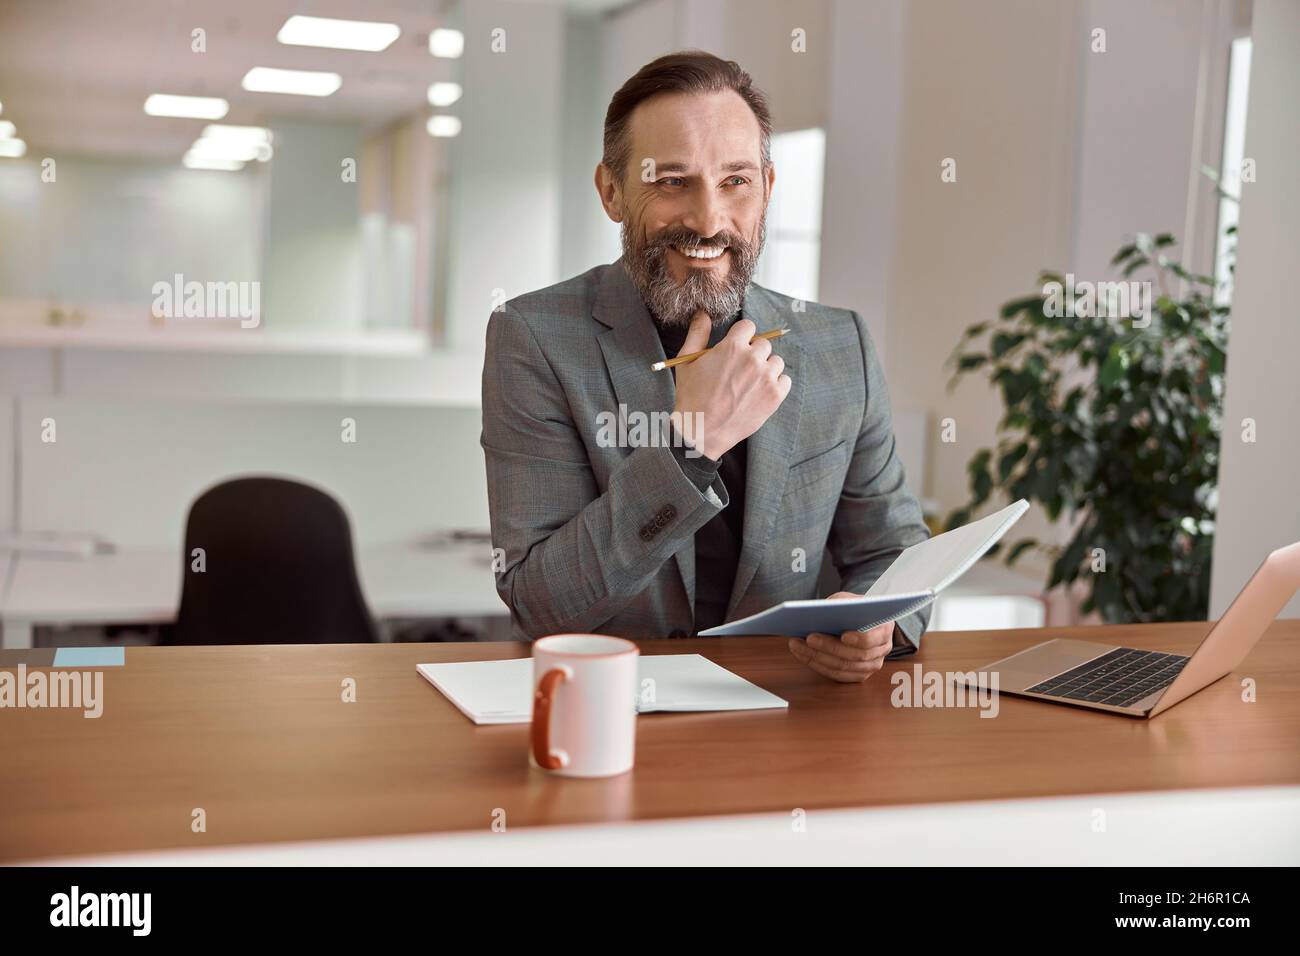 Un homme de race blanche, un adulte heureux, travaille dans un bureau moderne Banque D'Images